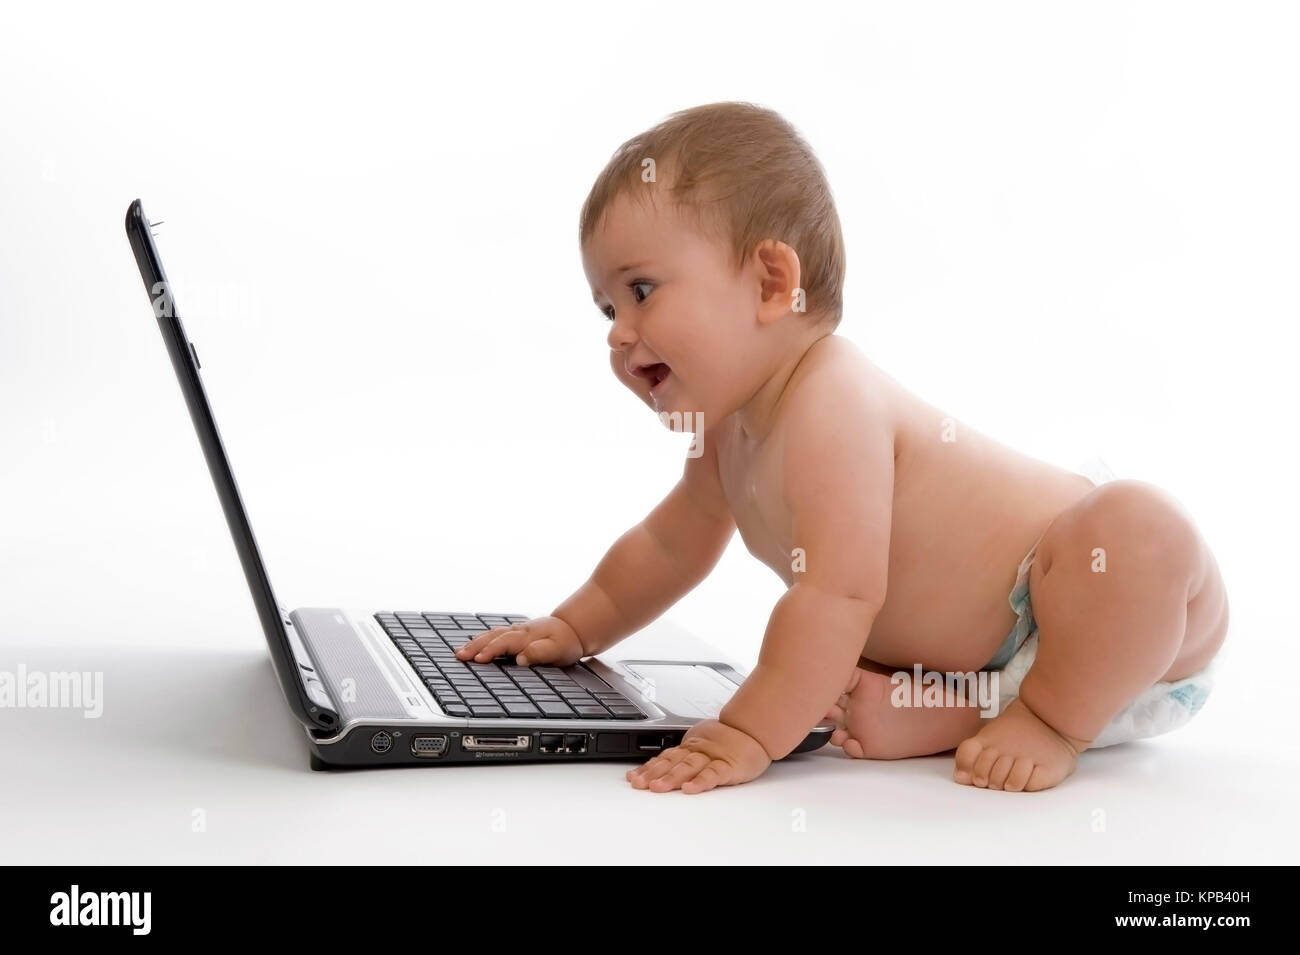 Model Release, Kleinkind, 8 Monate, Arbeitet am Laptop - kleines Kind mit laptop Stockfoto